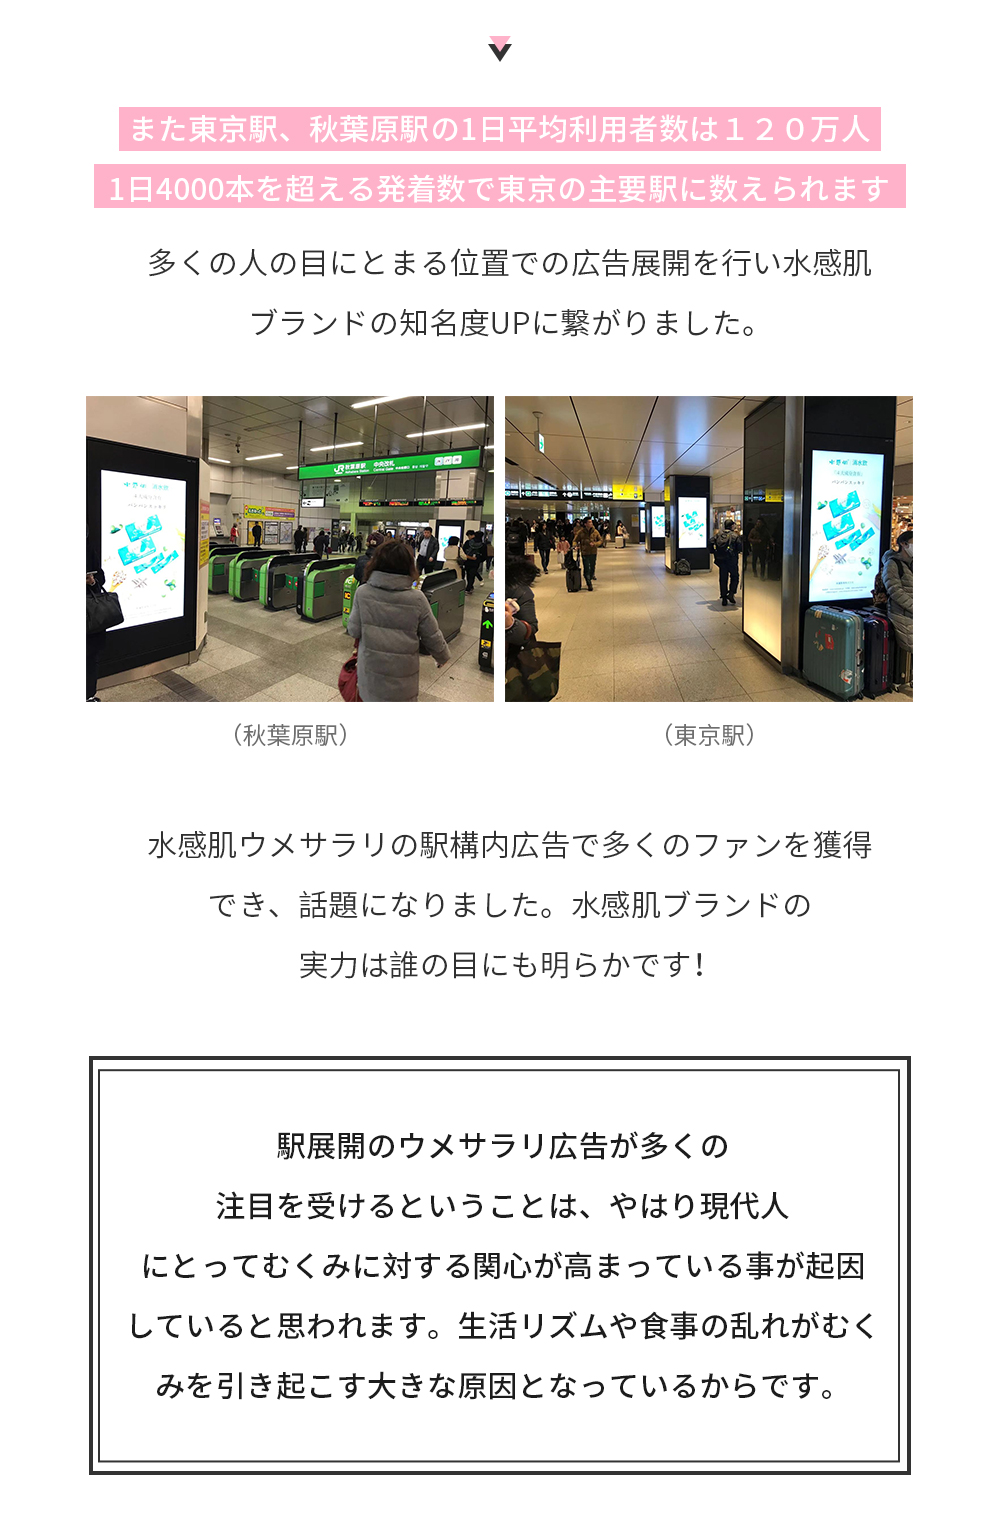 また東京駅、秋葉原駅の1日平均利用者数は１２０万人、1日4000本を超える発着数で東京の主要駅に数えられます。多くの人の目にとまる位置での広告展開を行い水感肌ブランドの知名度UPに繋がりました。水感肌ウメサラリの駅構内広告で多くのファンを獲得でき、話題になりました。 水感肌ブランドの実力は誰の目にも明らかです！駅展開のウメサラリ広告が多くの注目を受けるということは、やはり現代人にとってむくみに対する関心が高まっている事が起因していると思われます。生活リズムや食事の乱れがむくみを引き起こす大きな原因となっているからです。